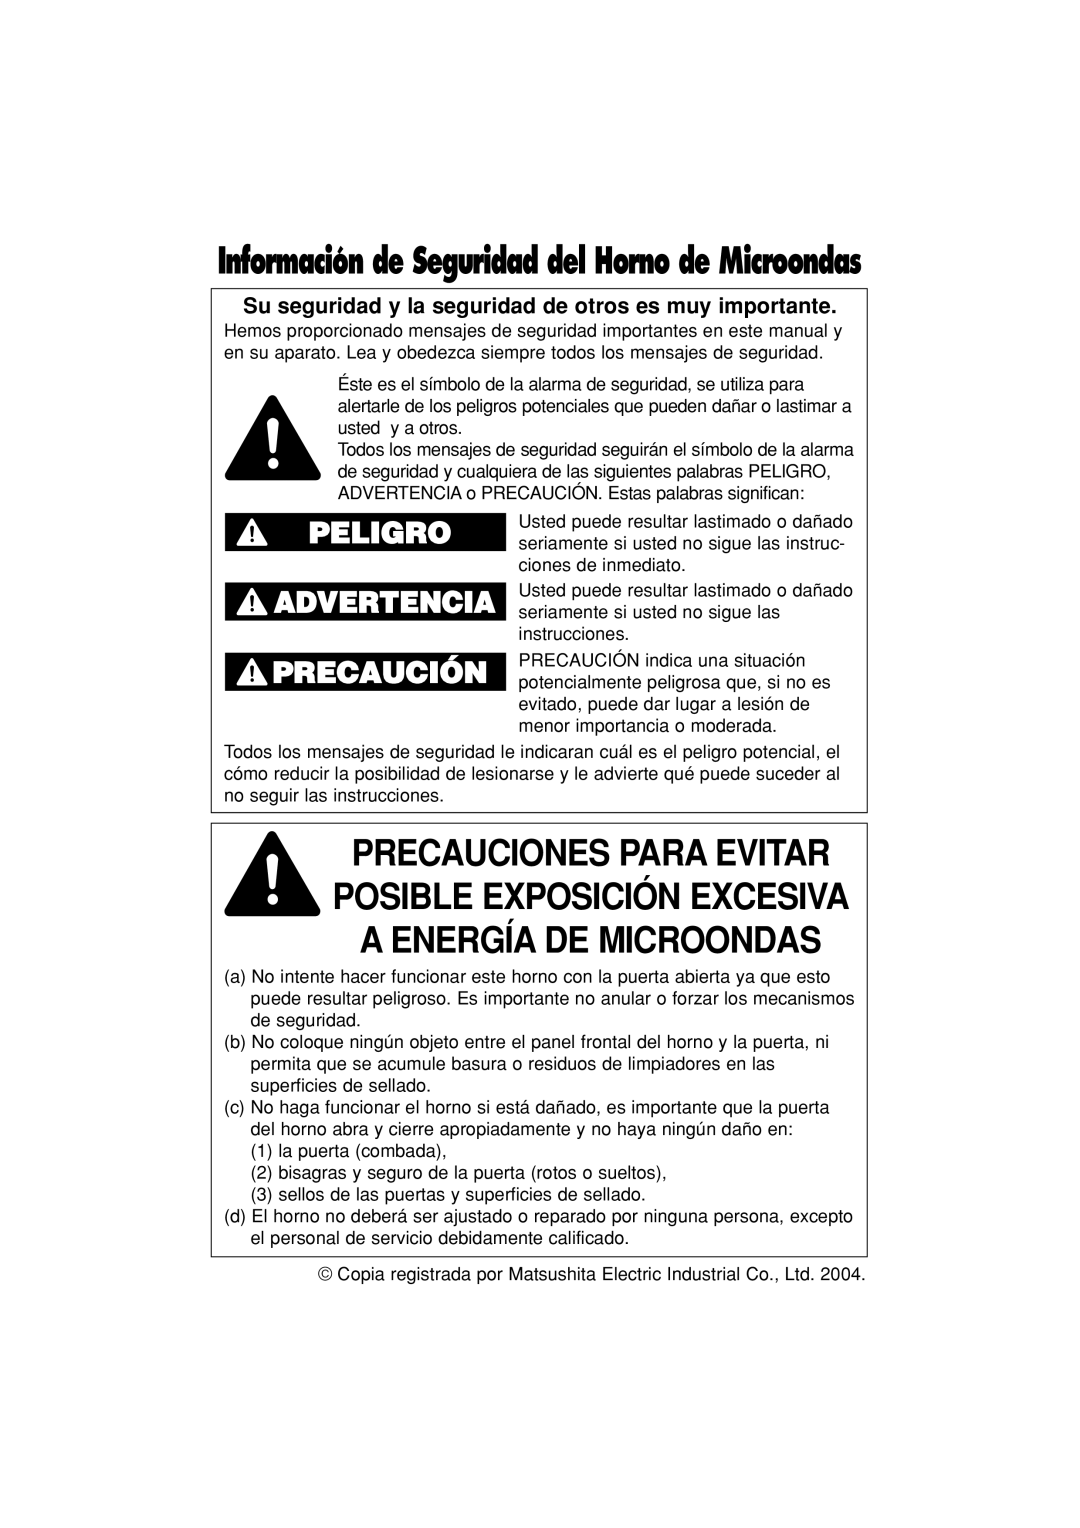 Panasonic NN-S334 important safety instructions Peligro Advertencia, Información de Seguridad del Horno de Microondas 